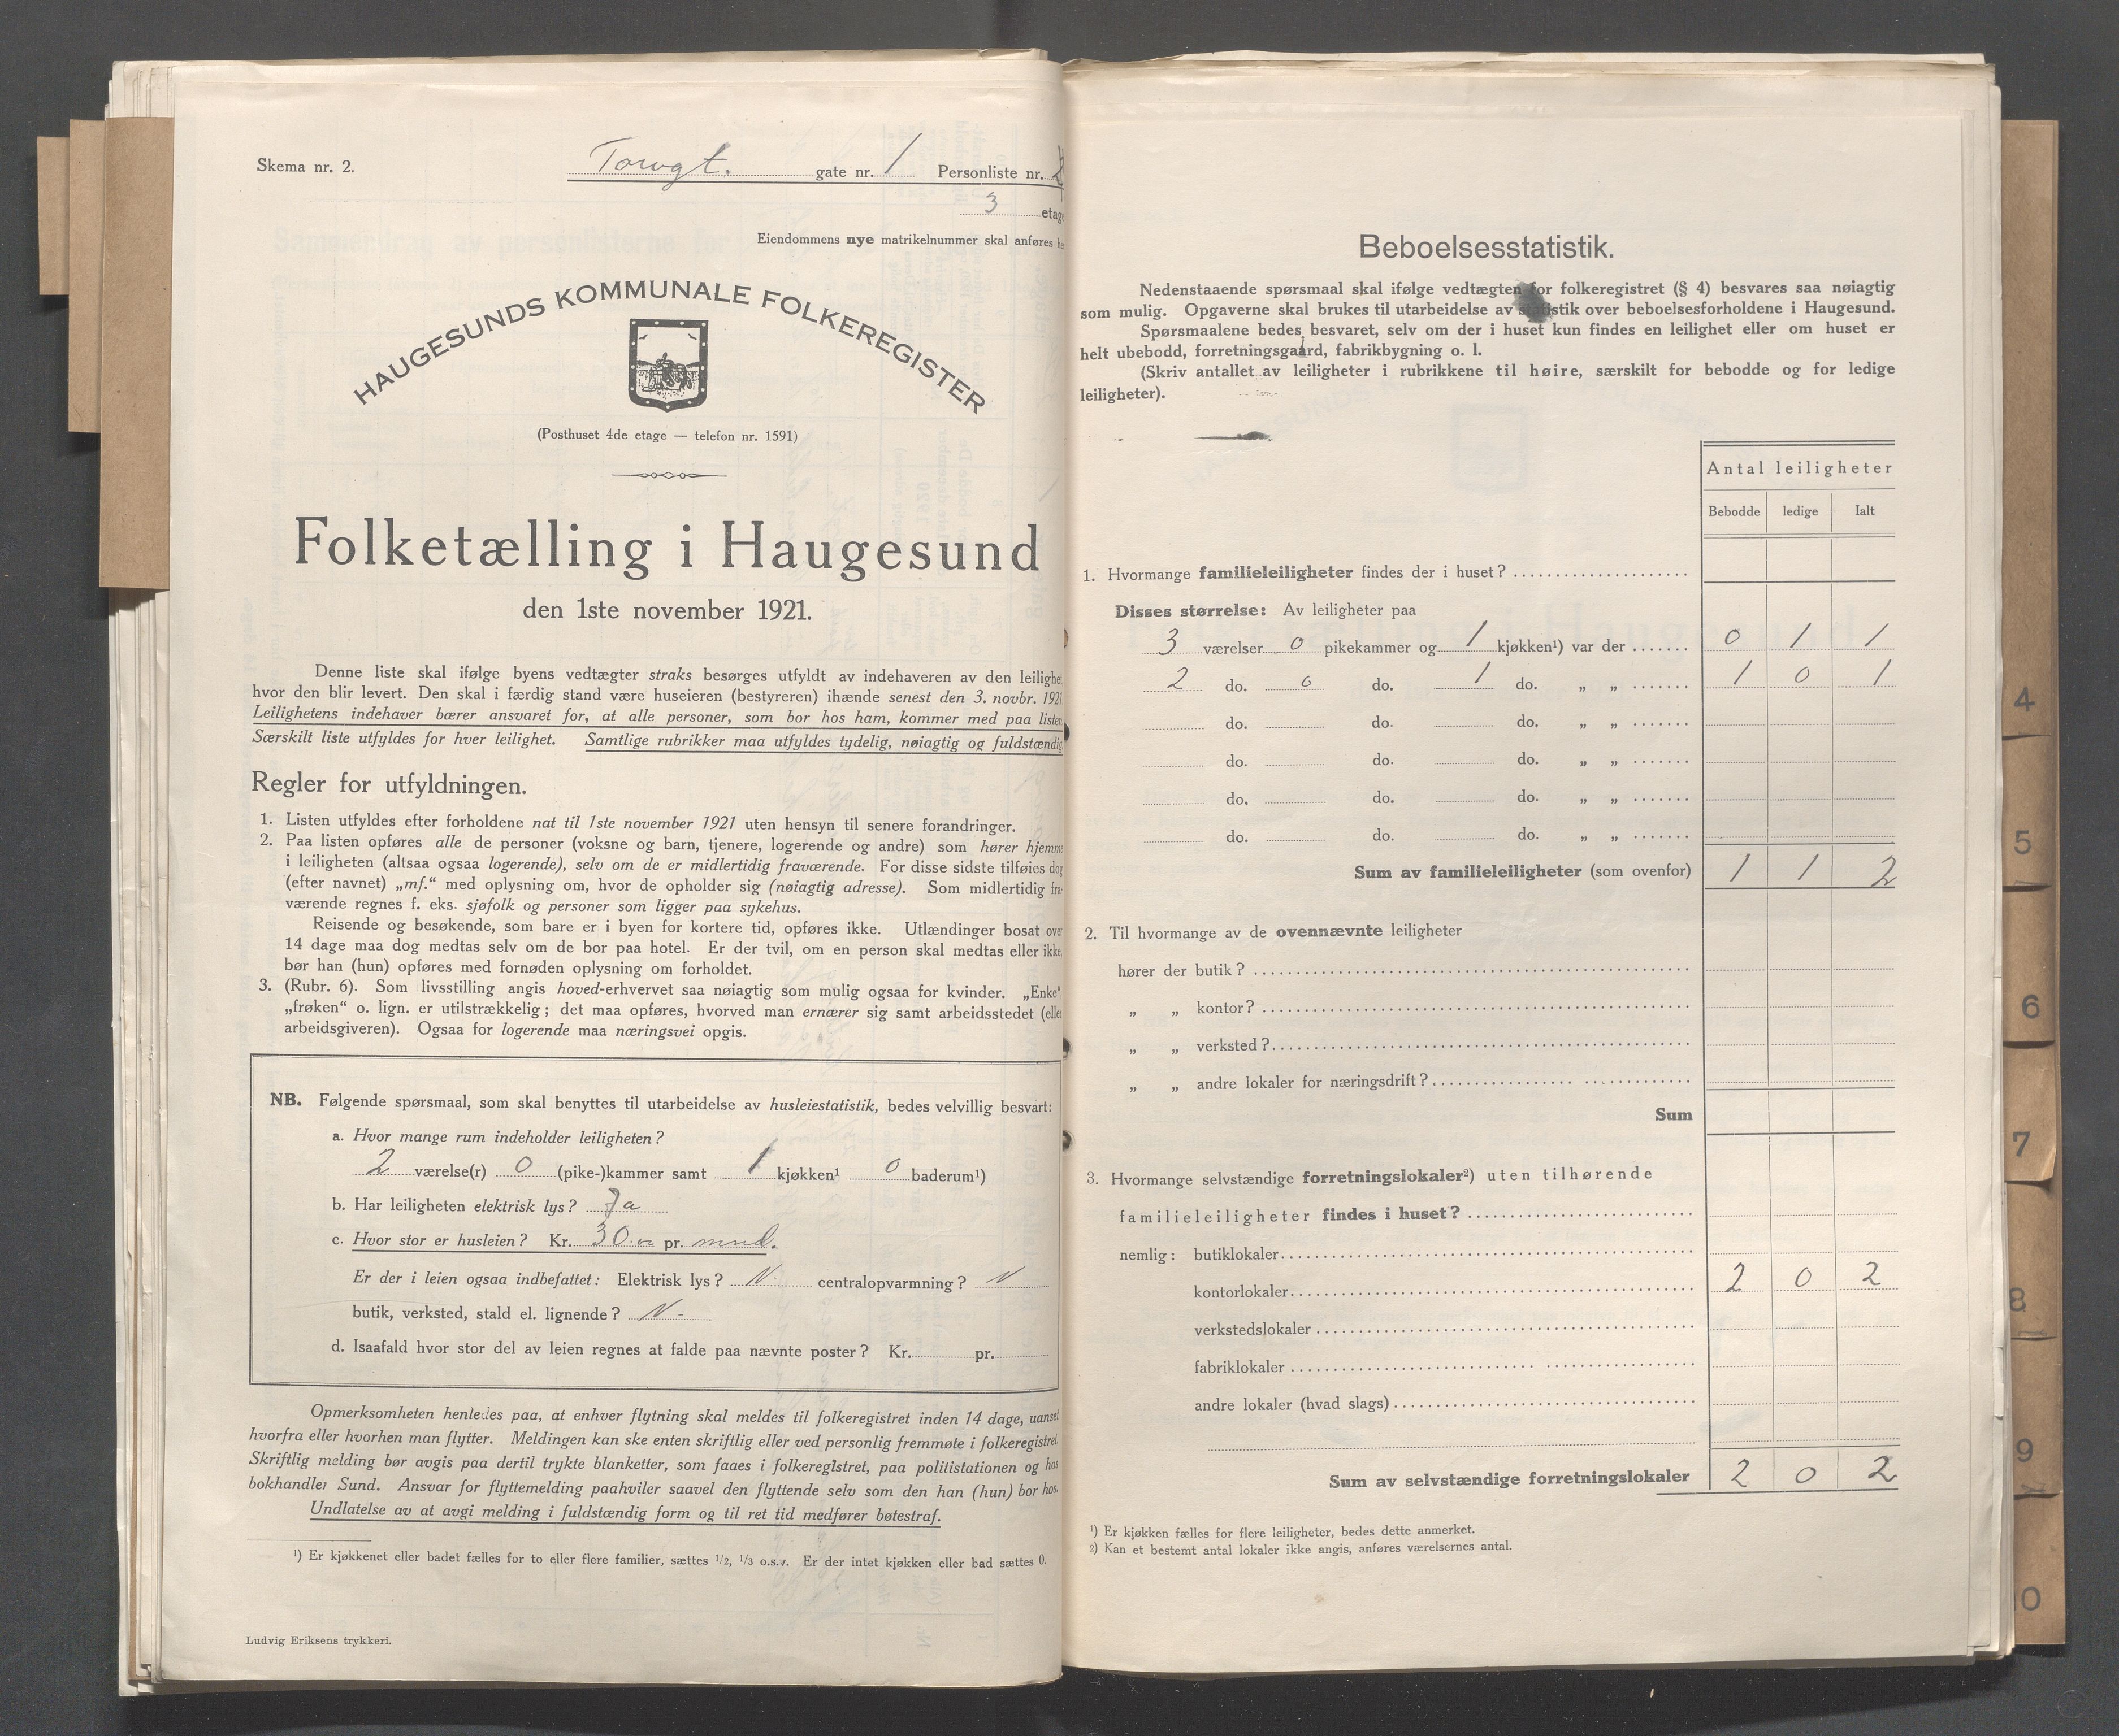 IKAR, Local census 1.11.1921 for Haugesund, 1921, p. 5439